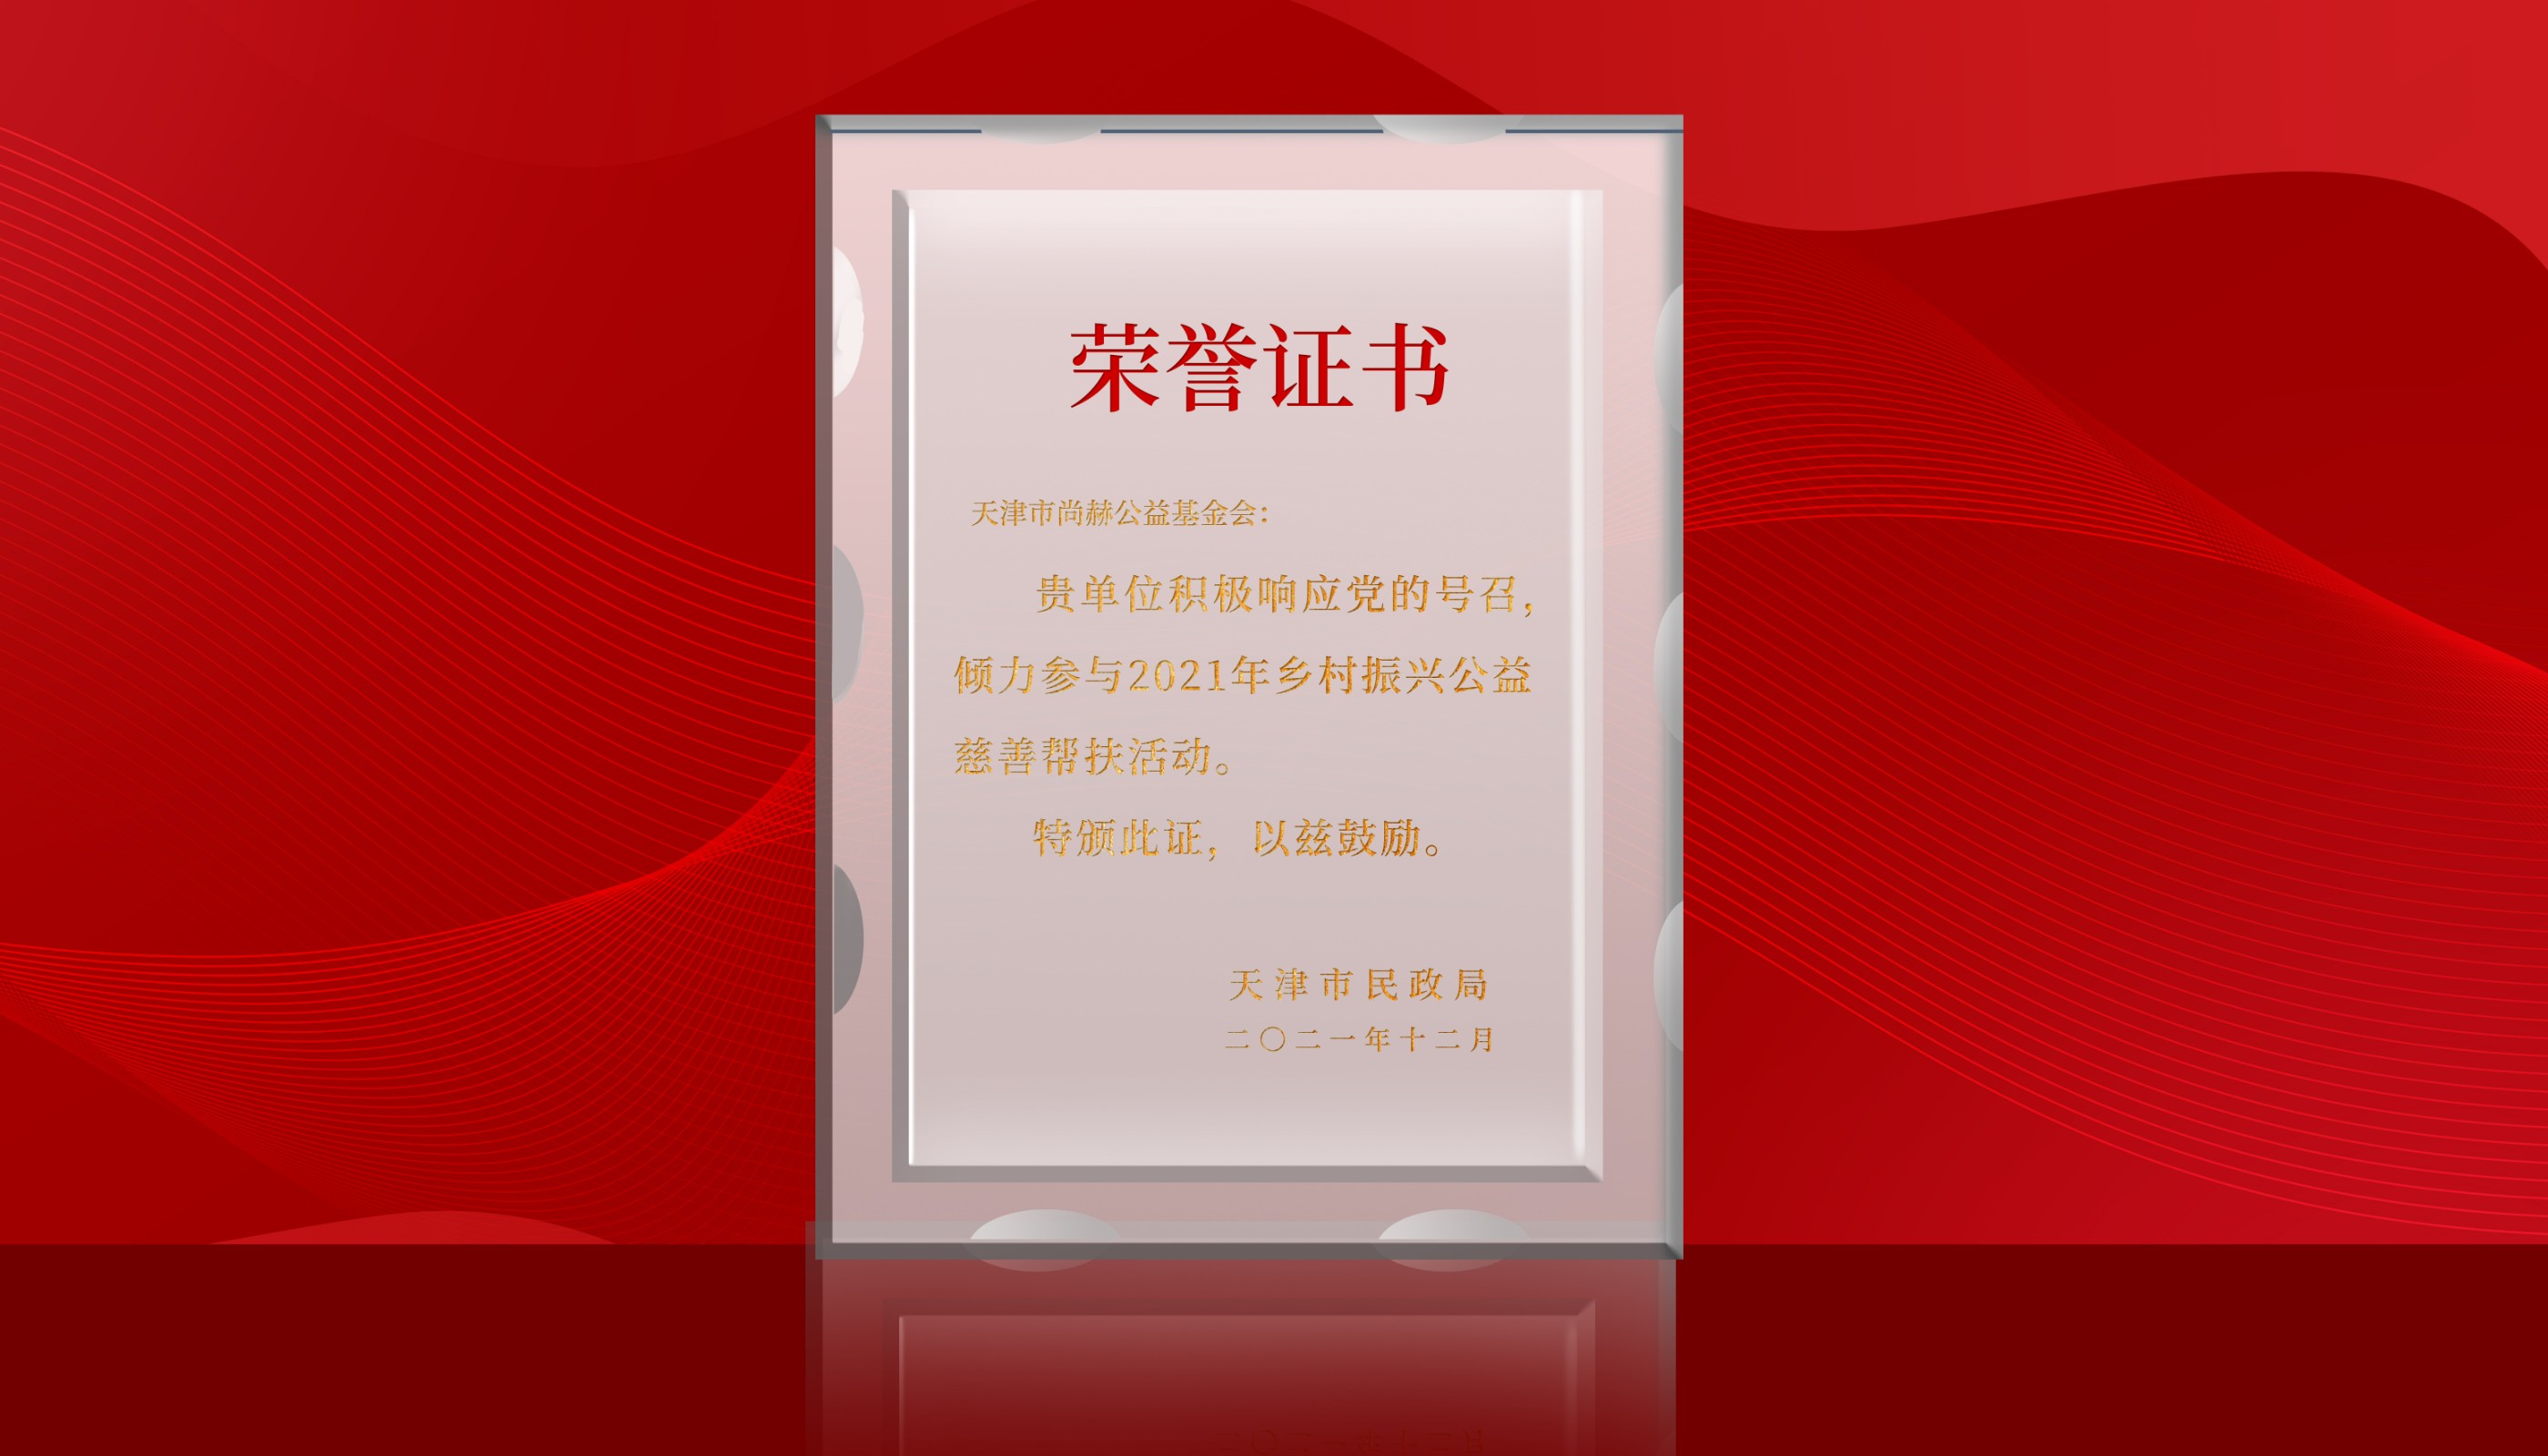 2022年7月-皇家体育(中国)有限责任公司公益基金会荣获天津市民政局颁发的荣誉证书